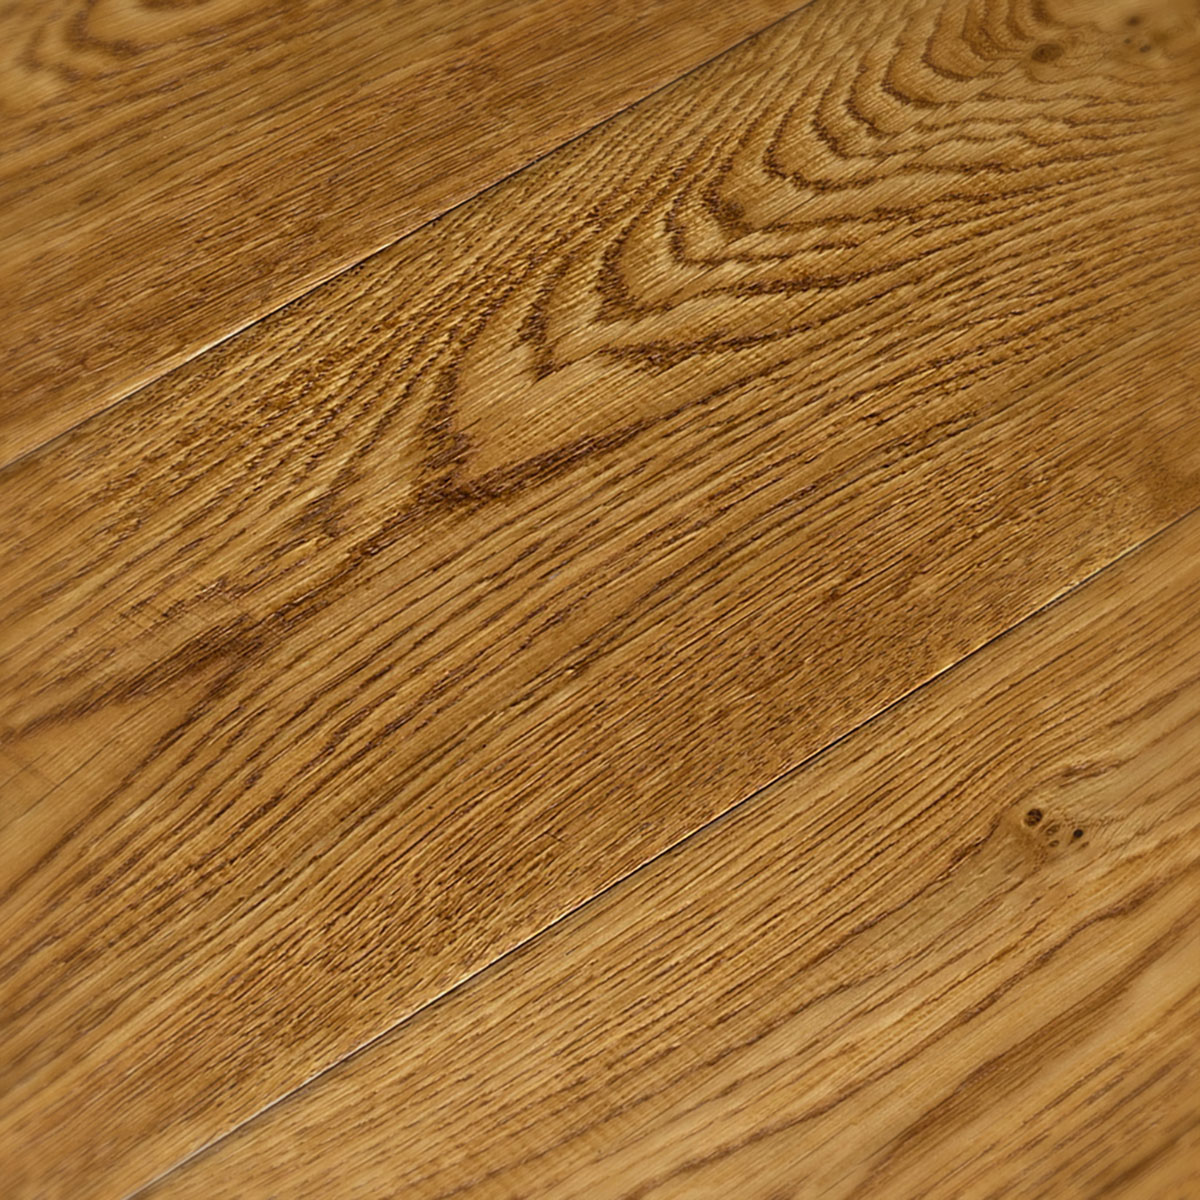 Midhope Herringbone - Distressed Rustic-Grade Oak Floor